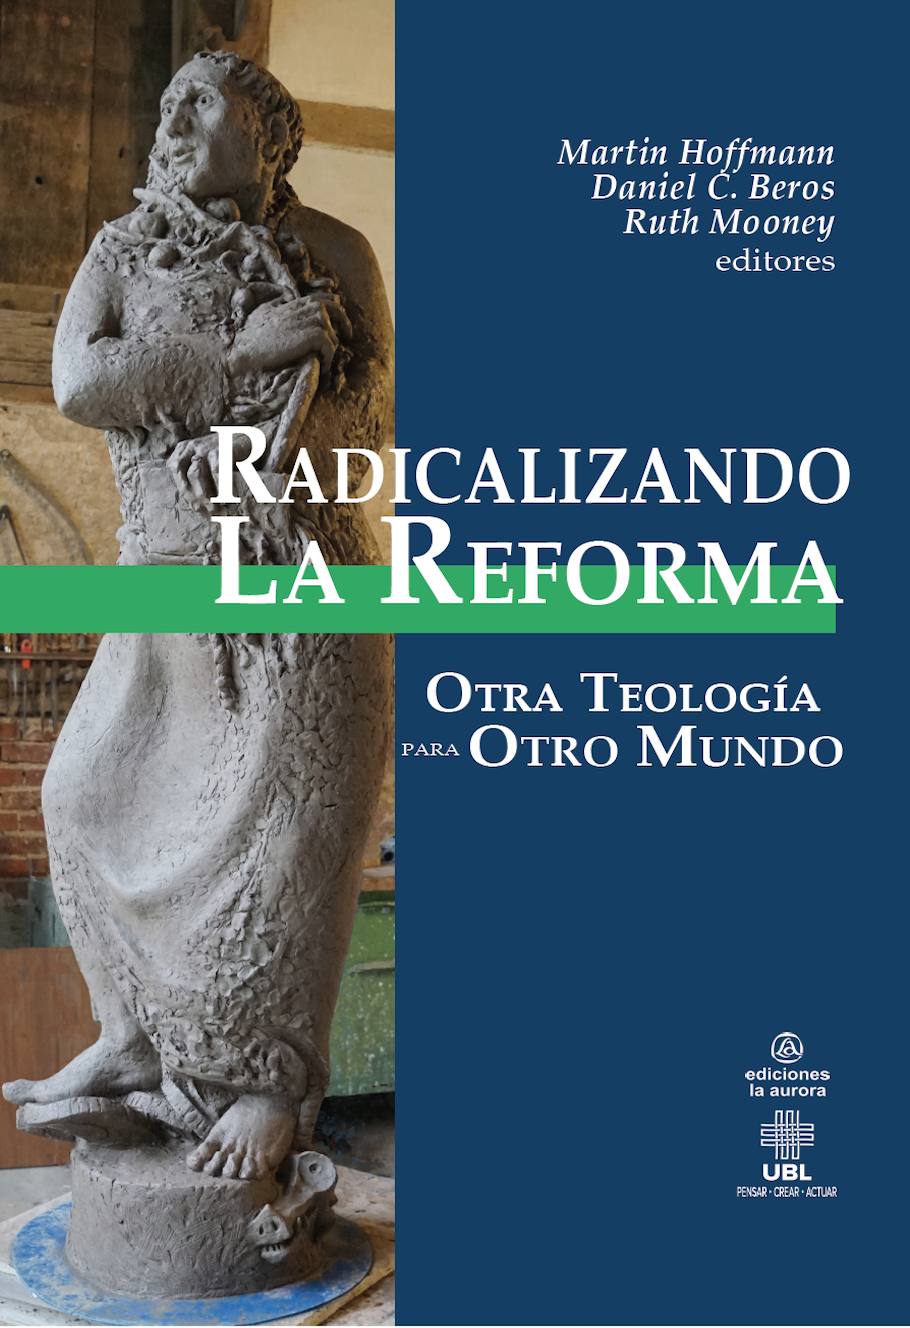 Radicalizando la reforma: Otra teología para otro mundo